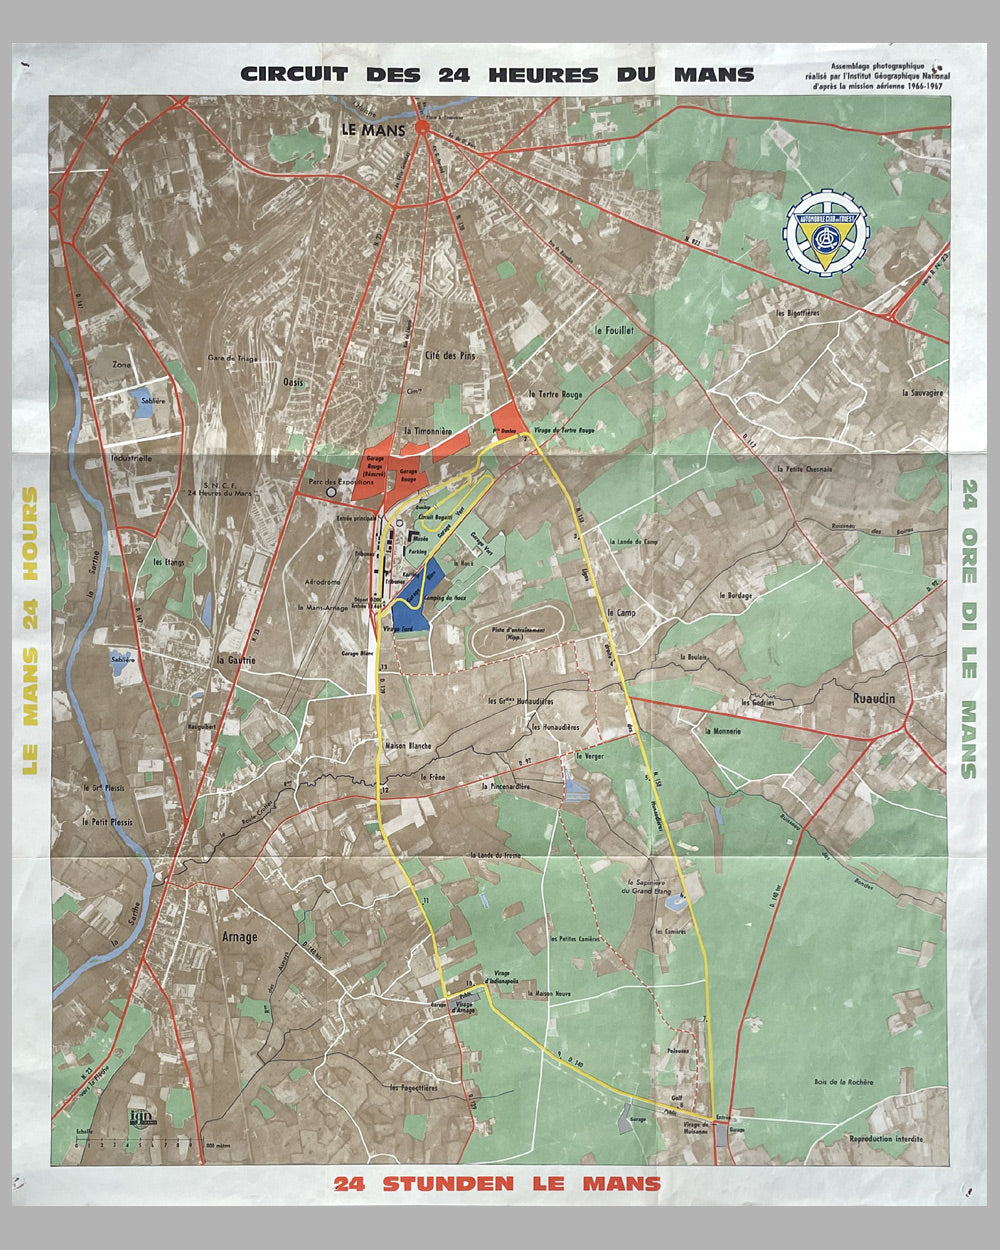 Le Mans 24 hours original race track map, 1967